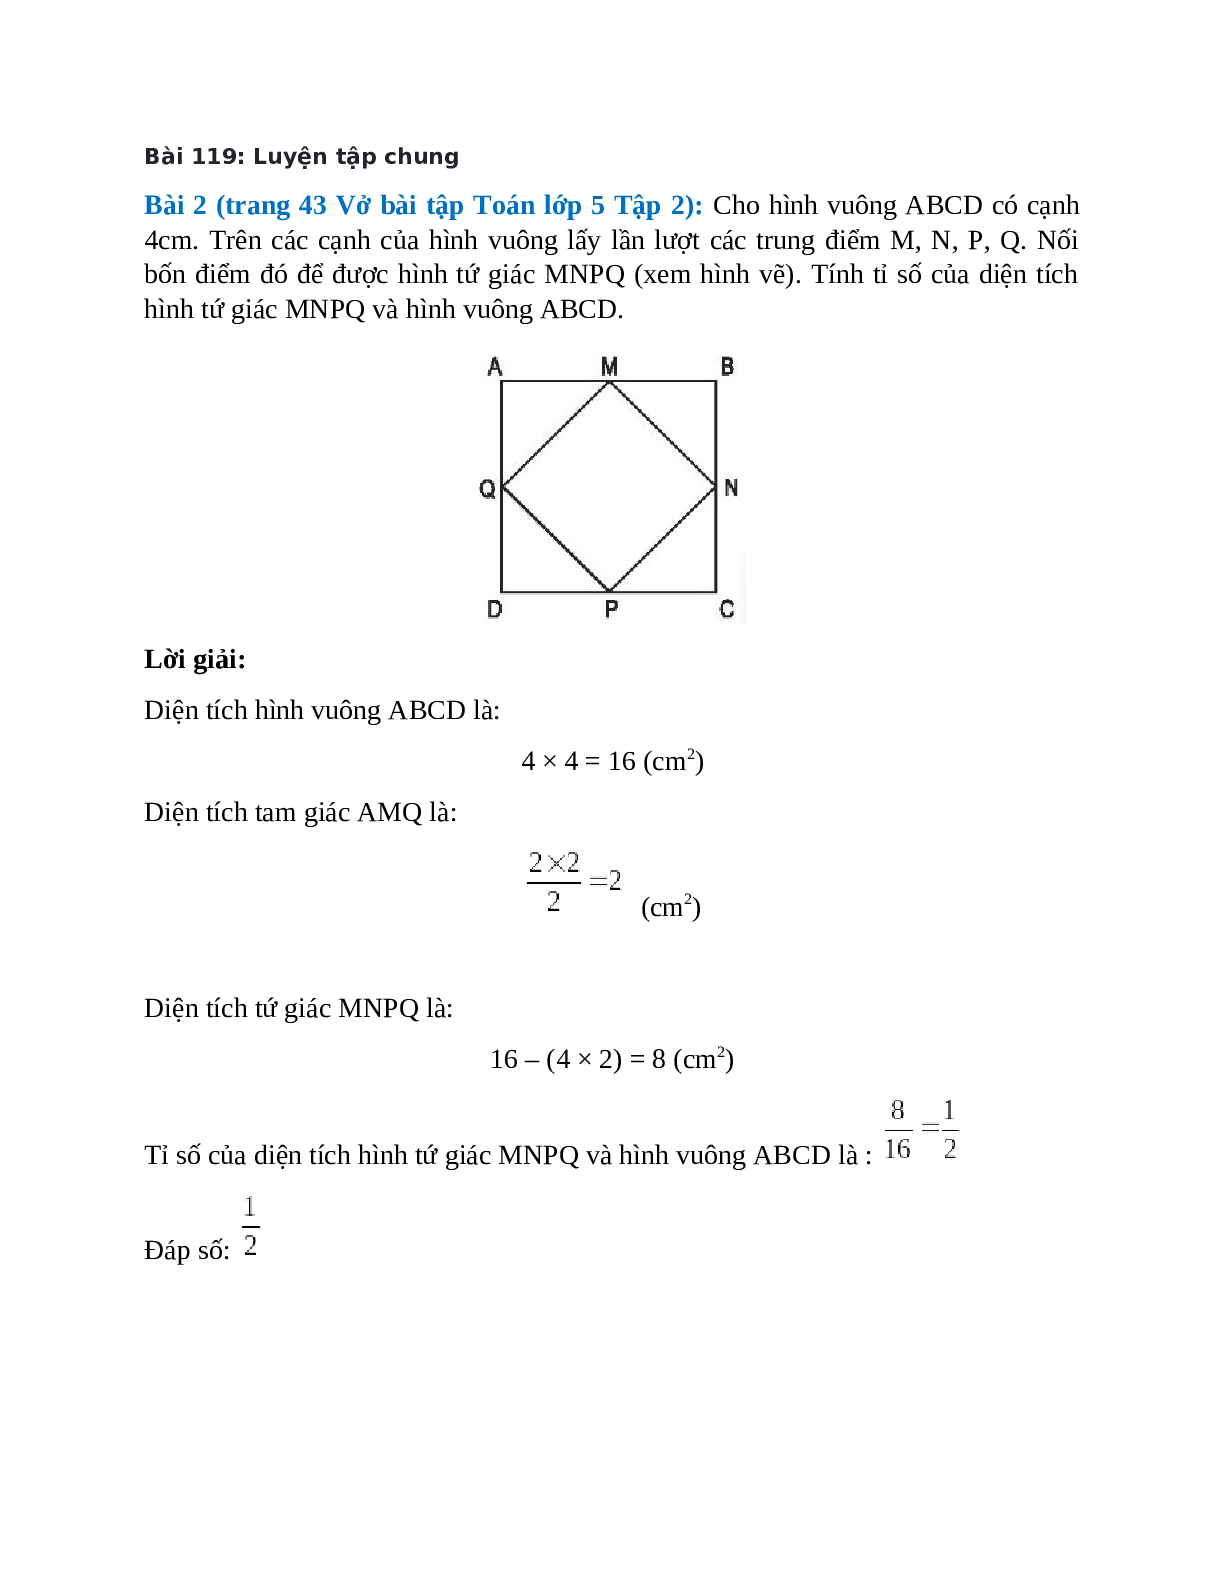 Cho hình vuông ABCD có cạnh 4cm. Trên các cạnh của hình vuông lấy lần lượt các trung điểm M, N, P, Q (trang 1)